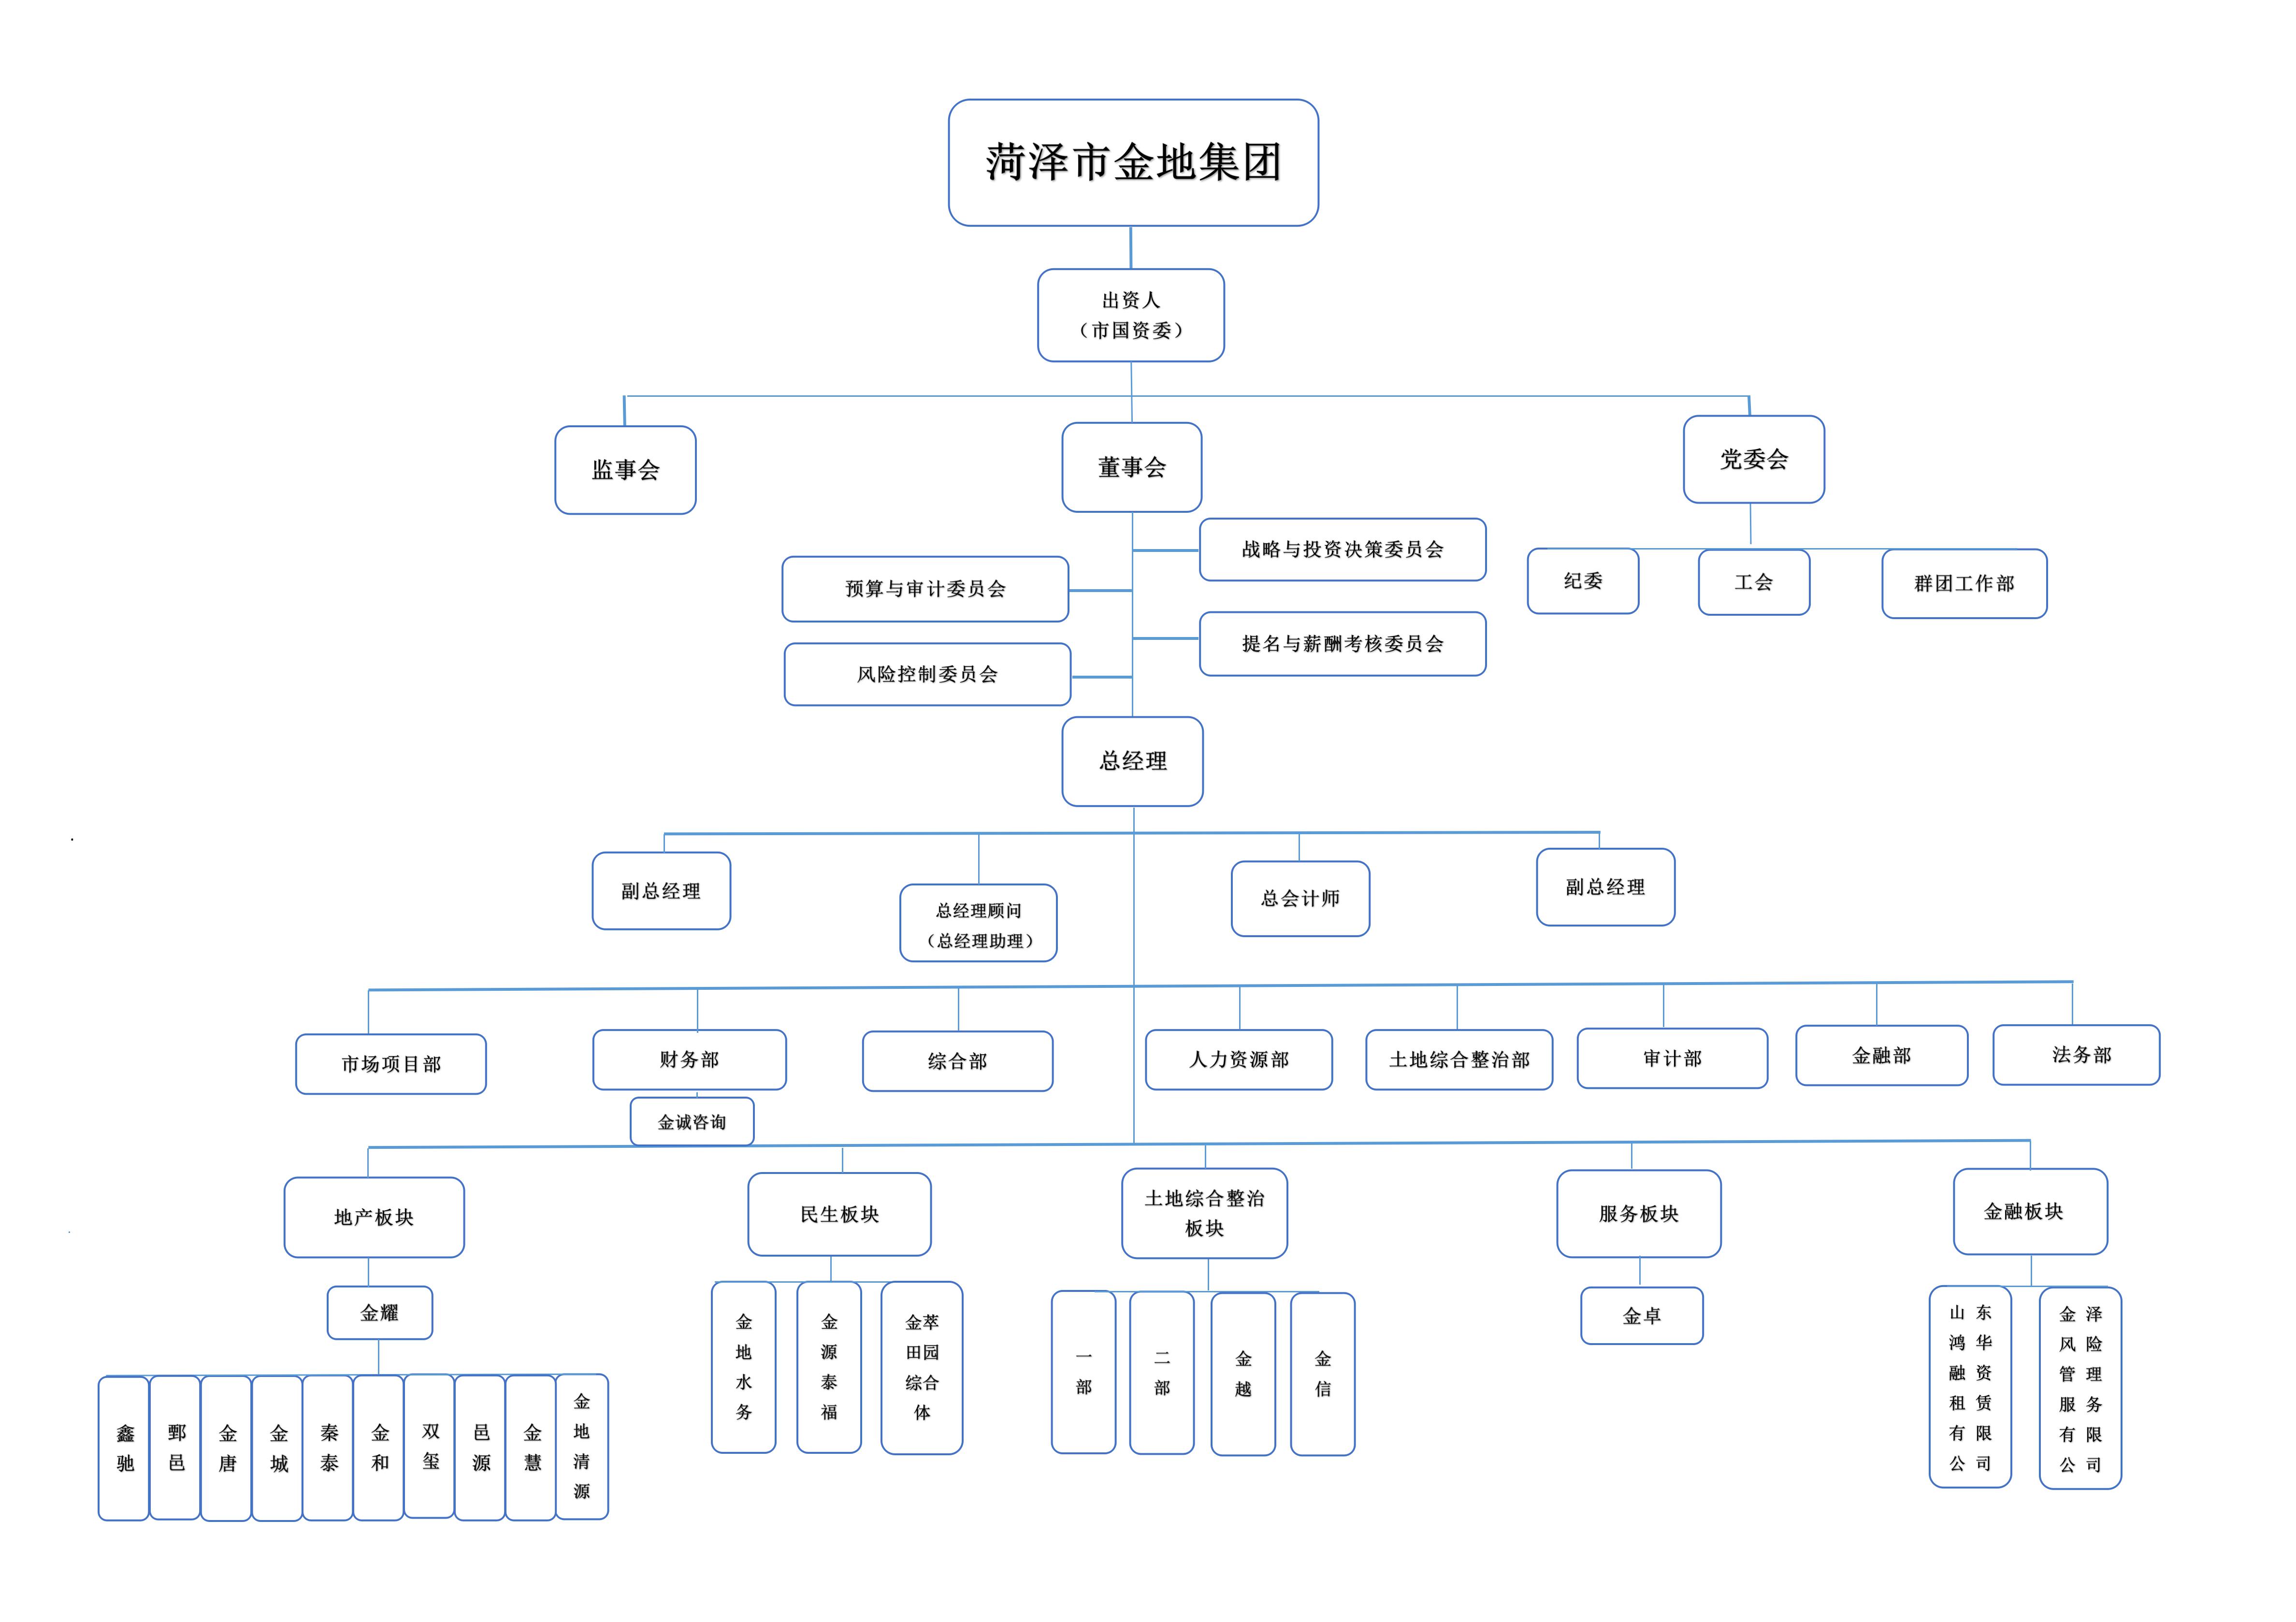 金地集团组织结构图(3)(1)_01.jpg